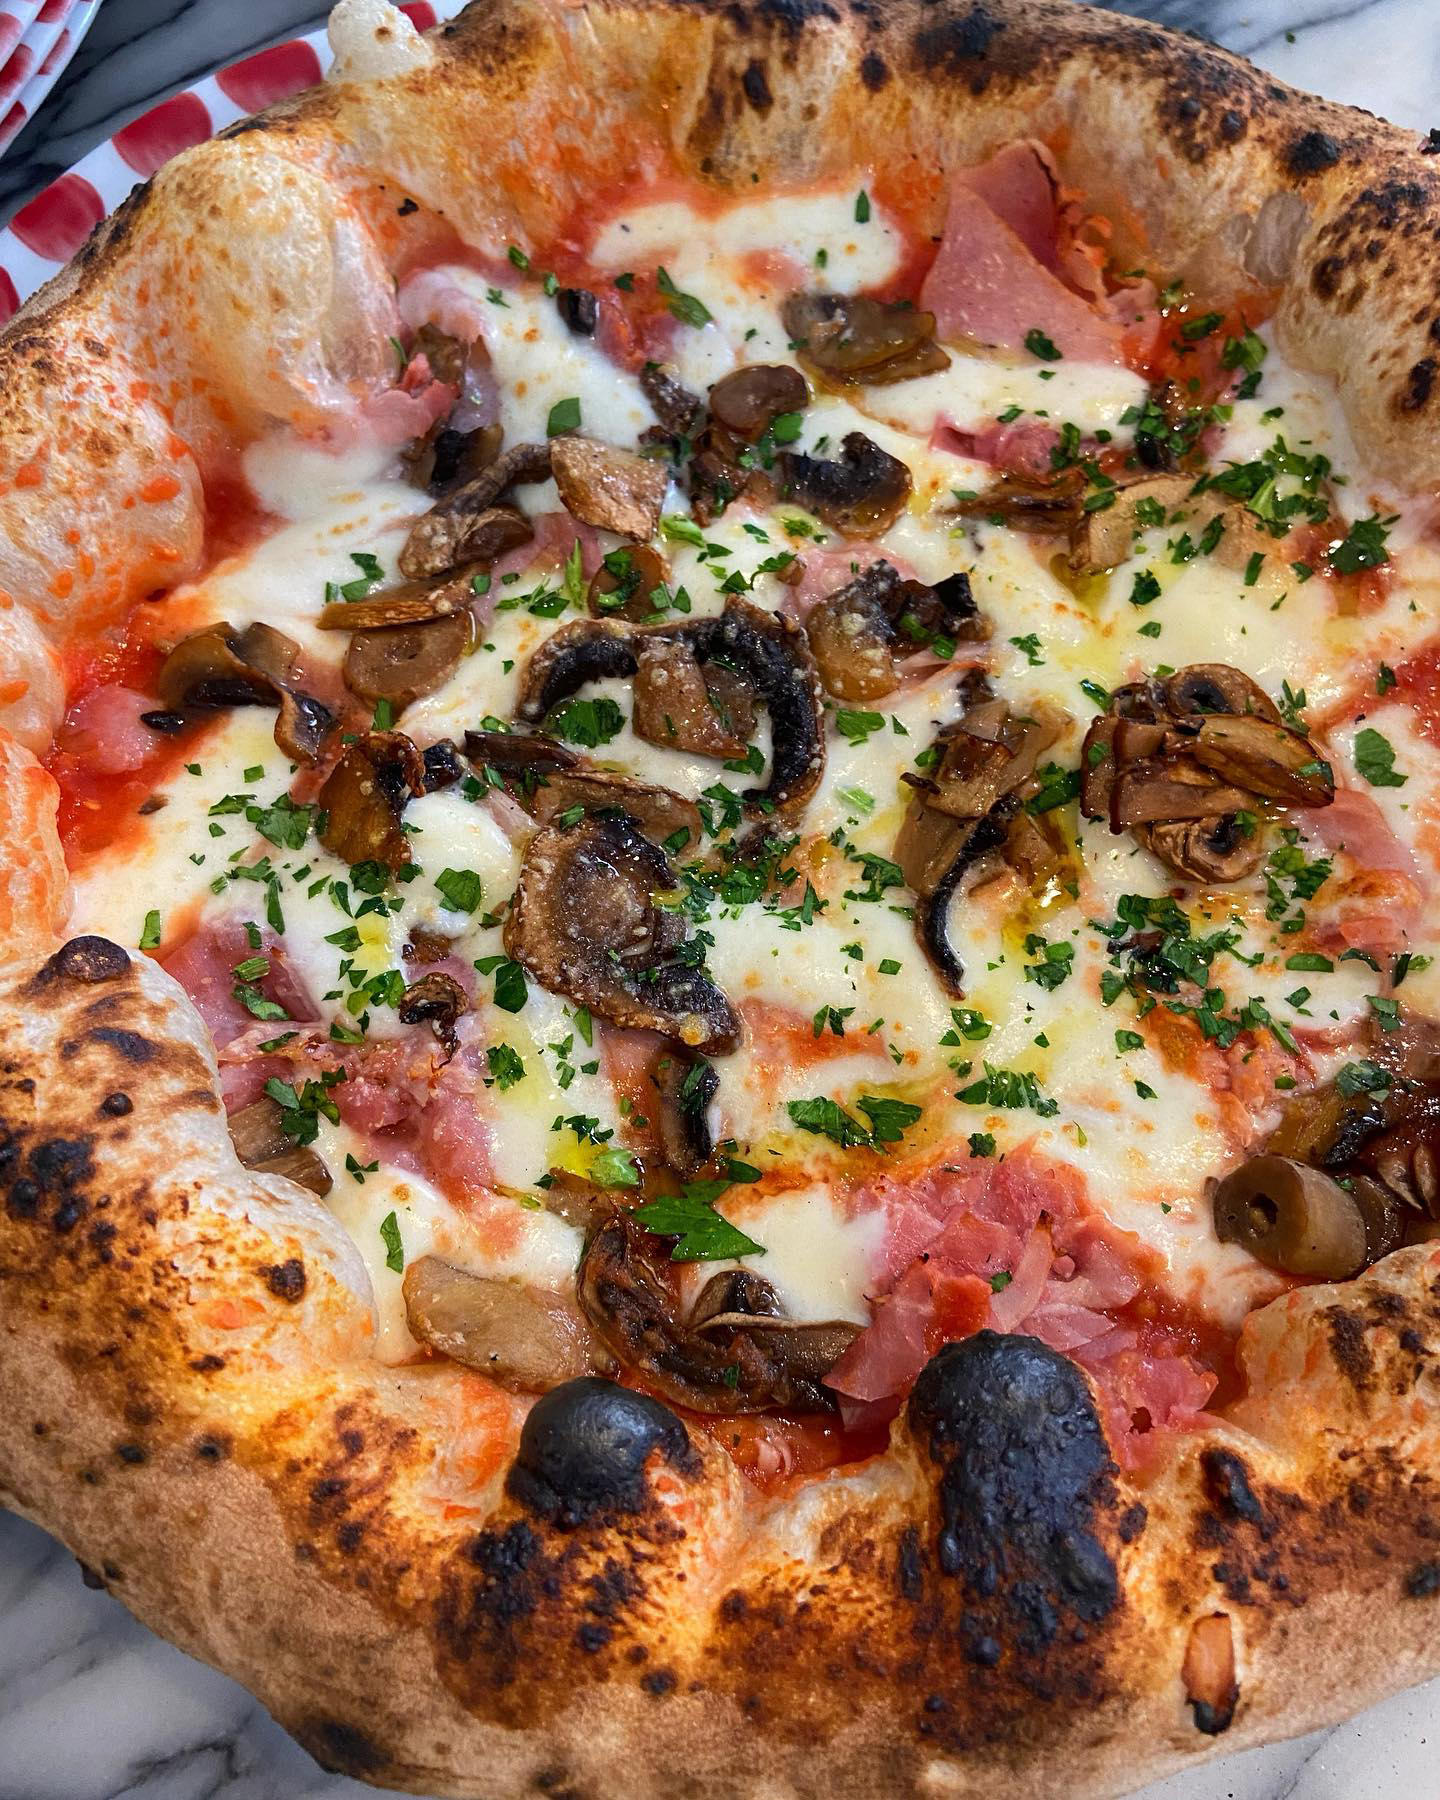 Peppe pizzeria napoletana - Elle ne rentre même pas dans le cadre tellement elle est généreuse